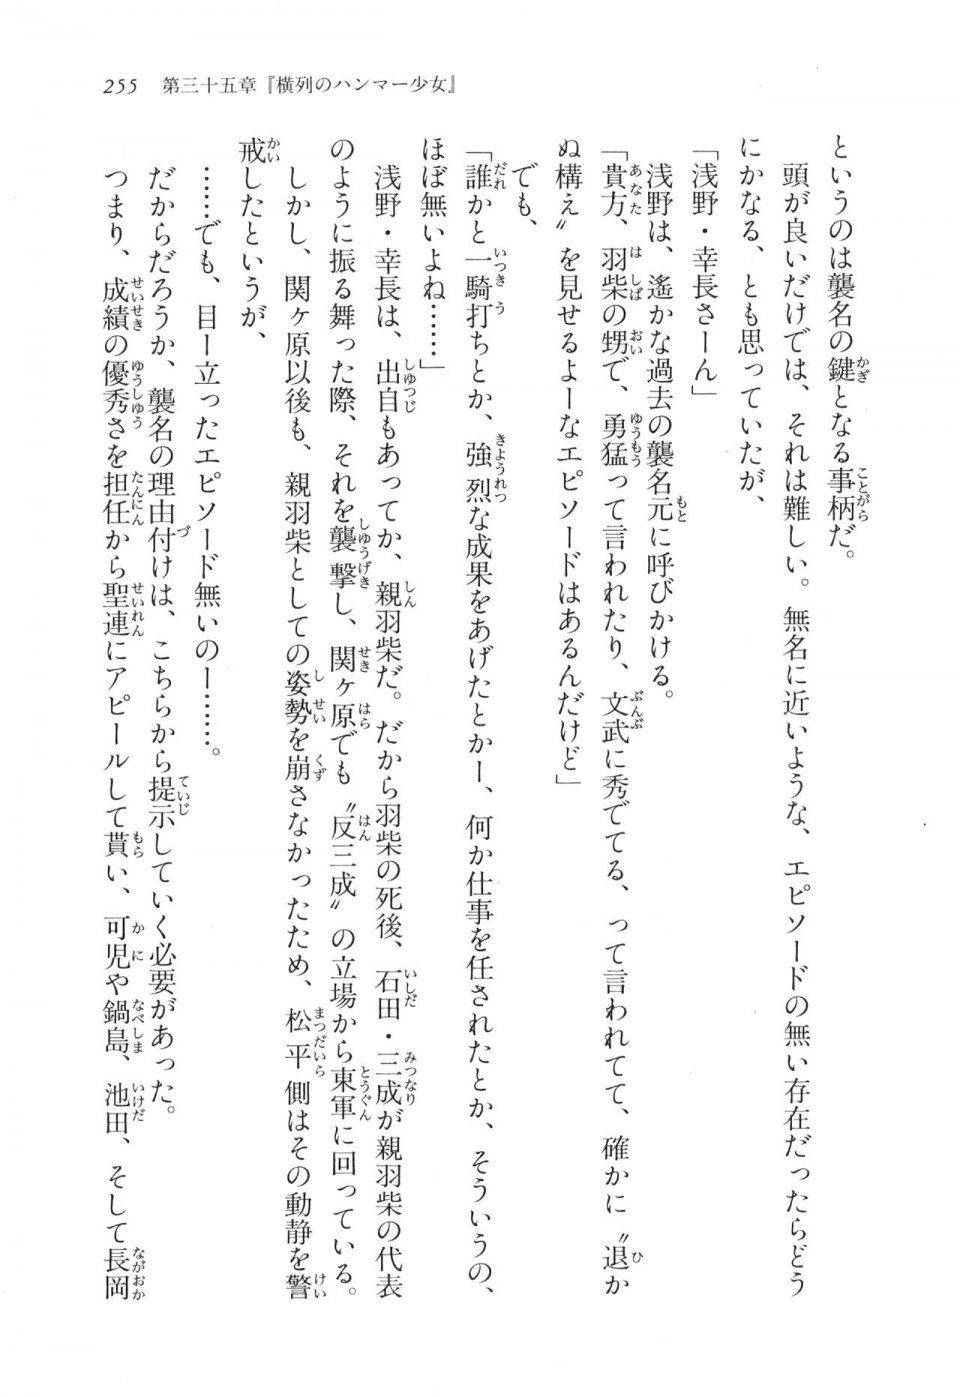 Kyoukai Senjou no Horizon LN Vol 17(7B) - Photo #255